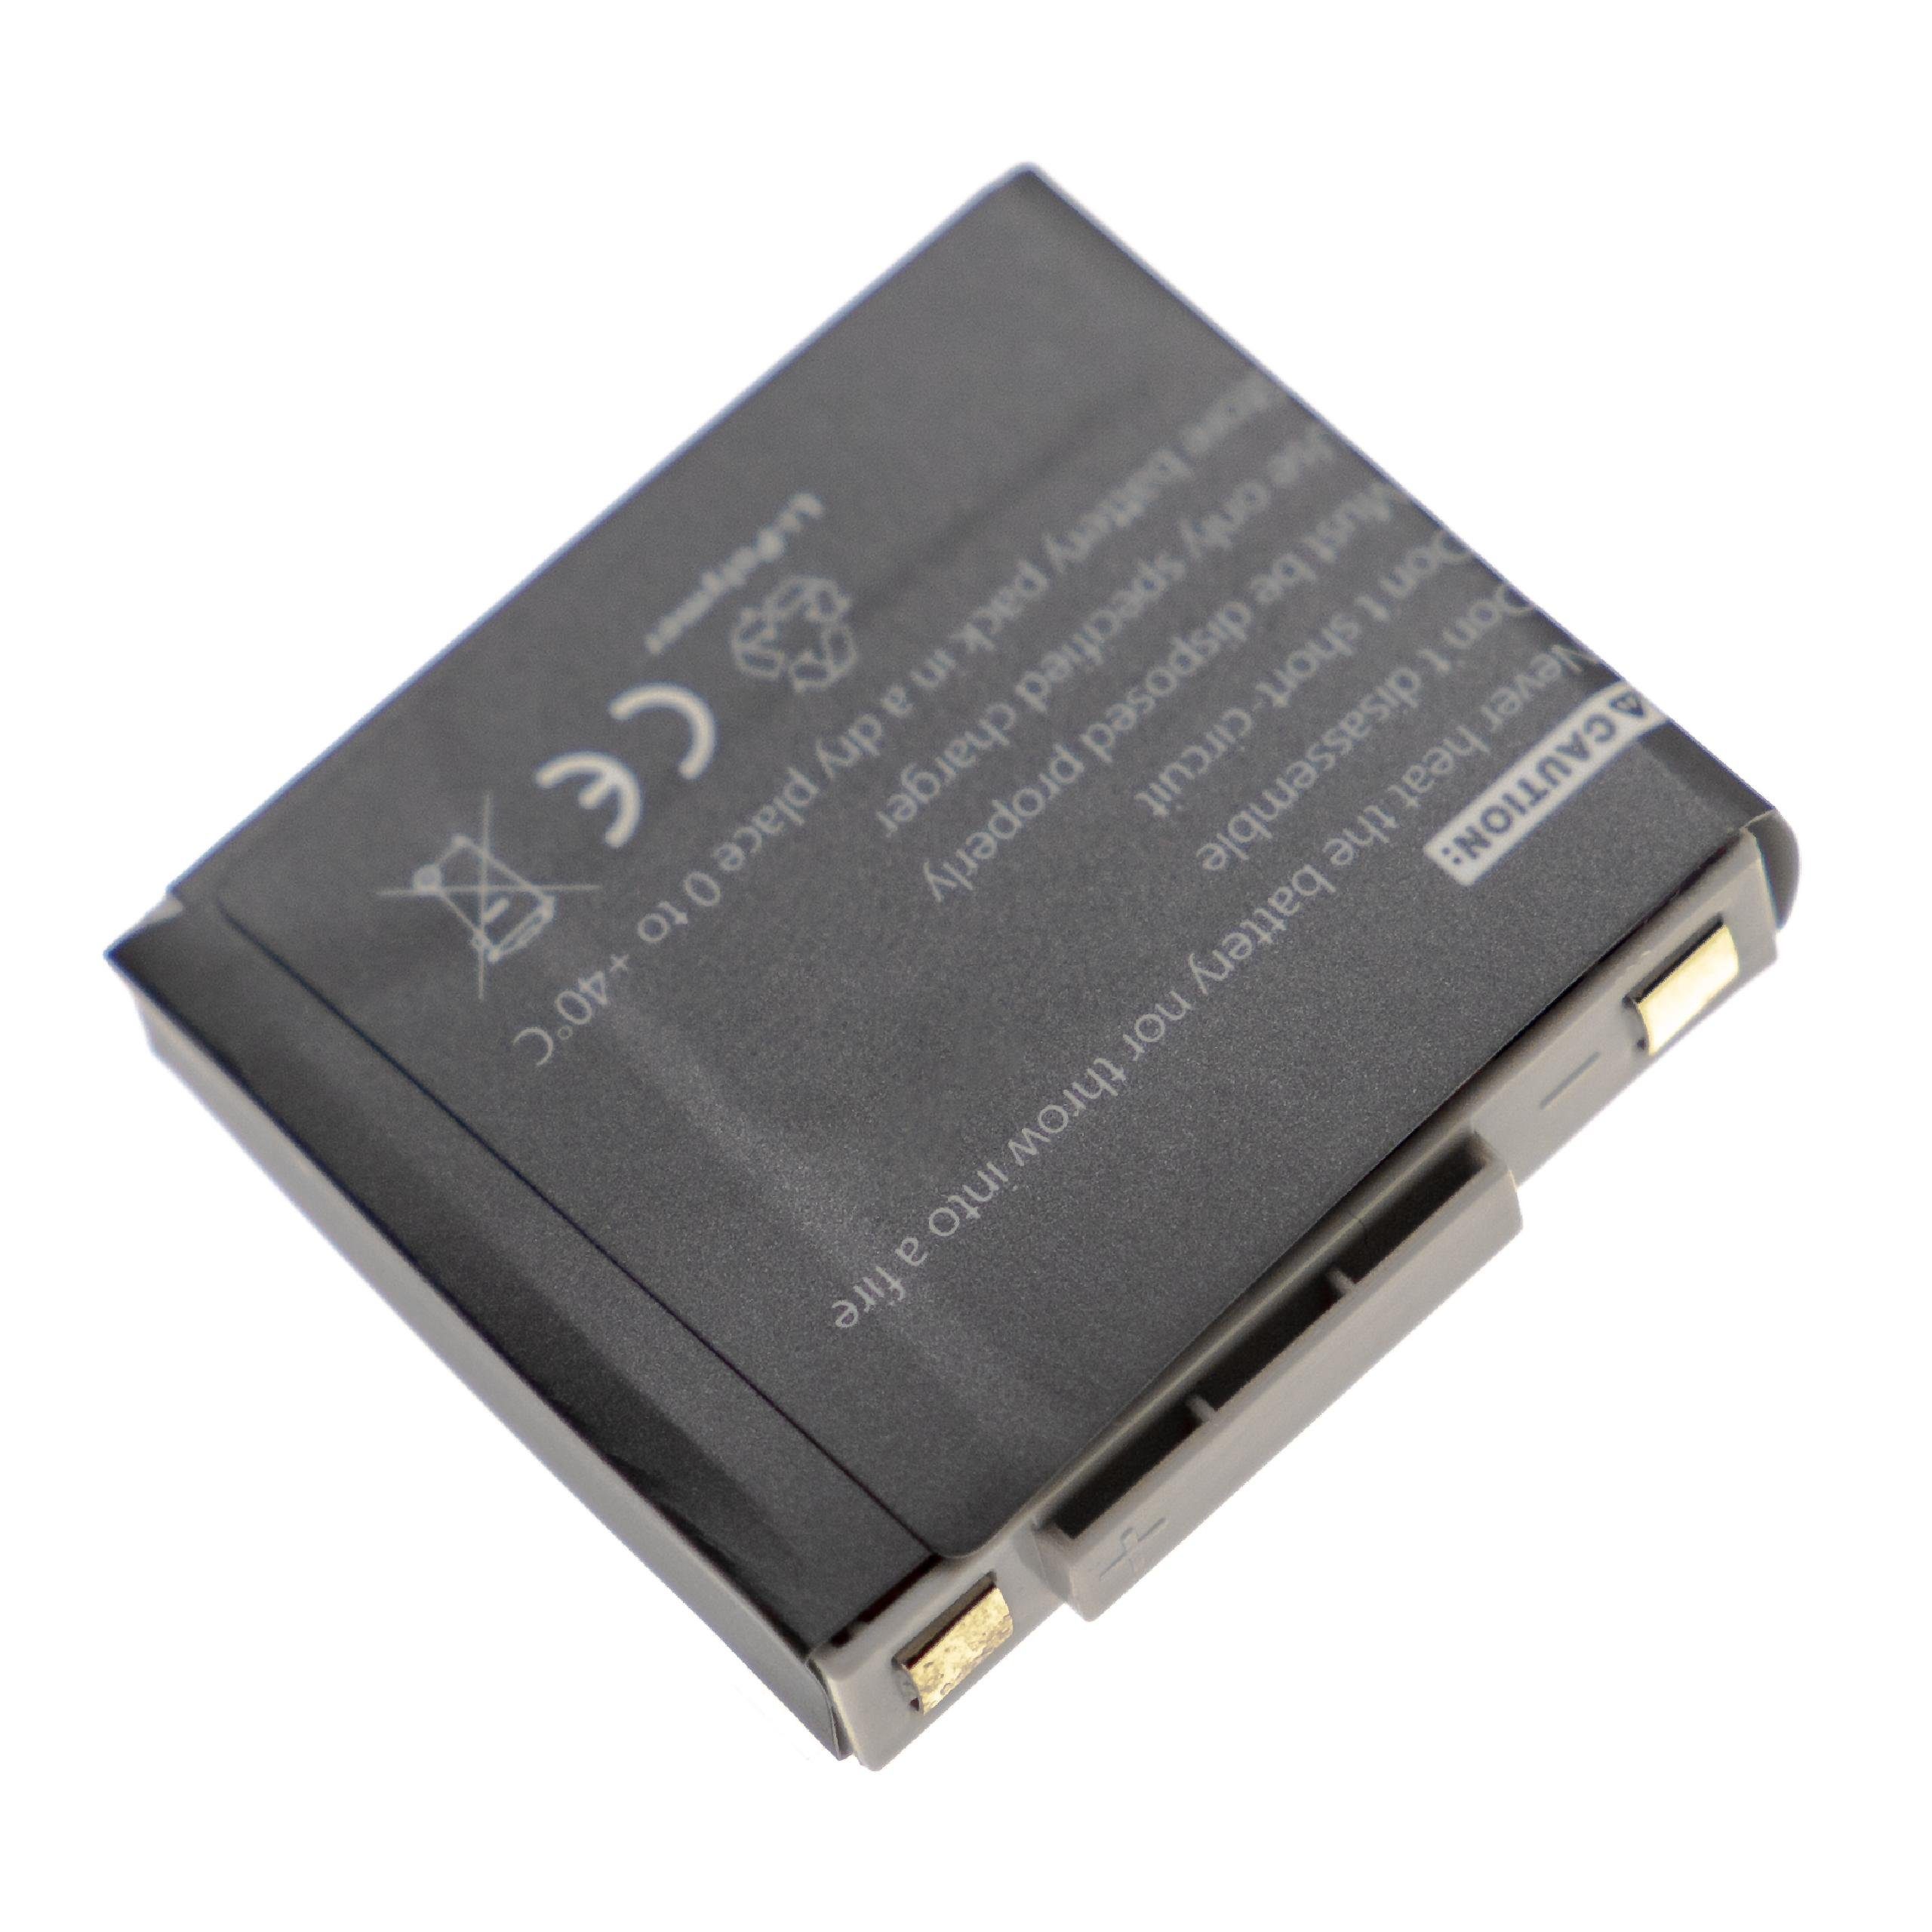 (3,7 GN V) Micro, Akku Netcom Jabra mAh vhbw Mini mit 340 GN9125 GN9125 kompatibel Li-Polymer